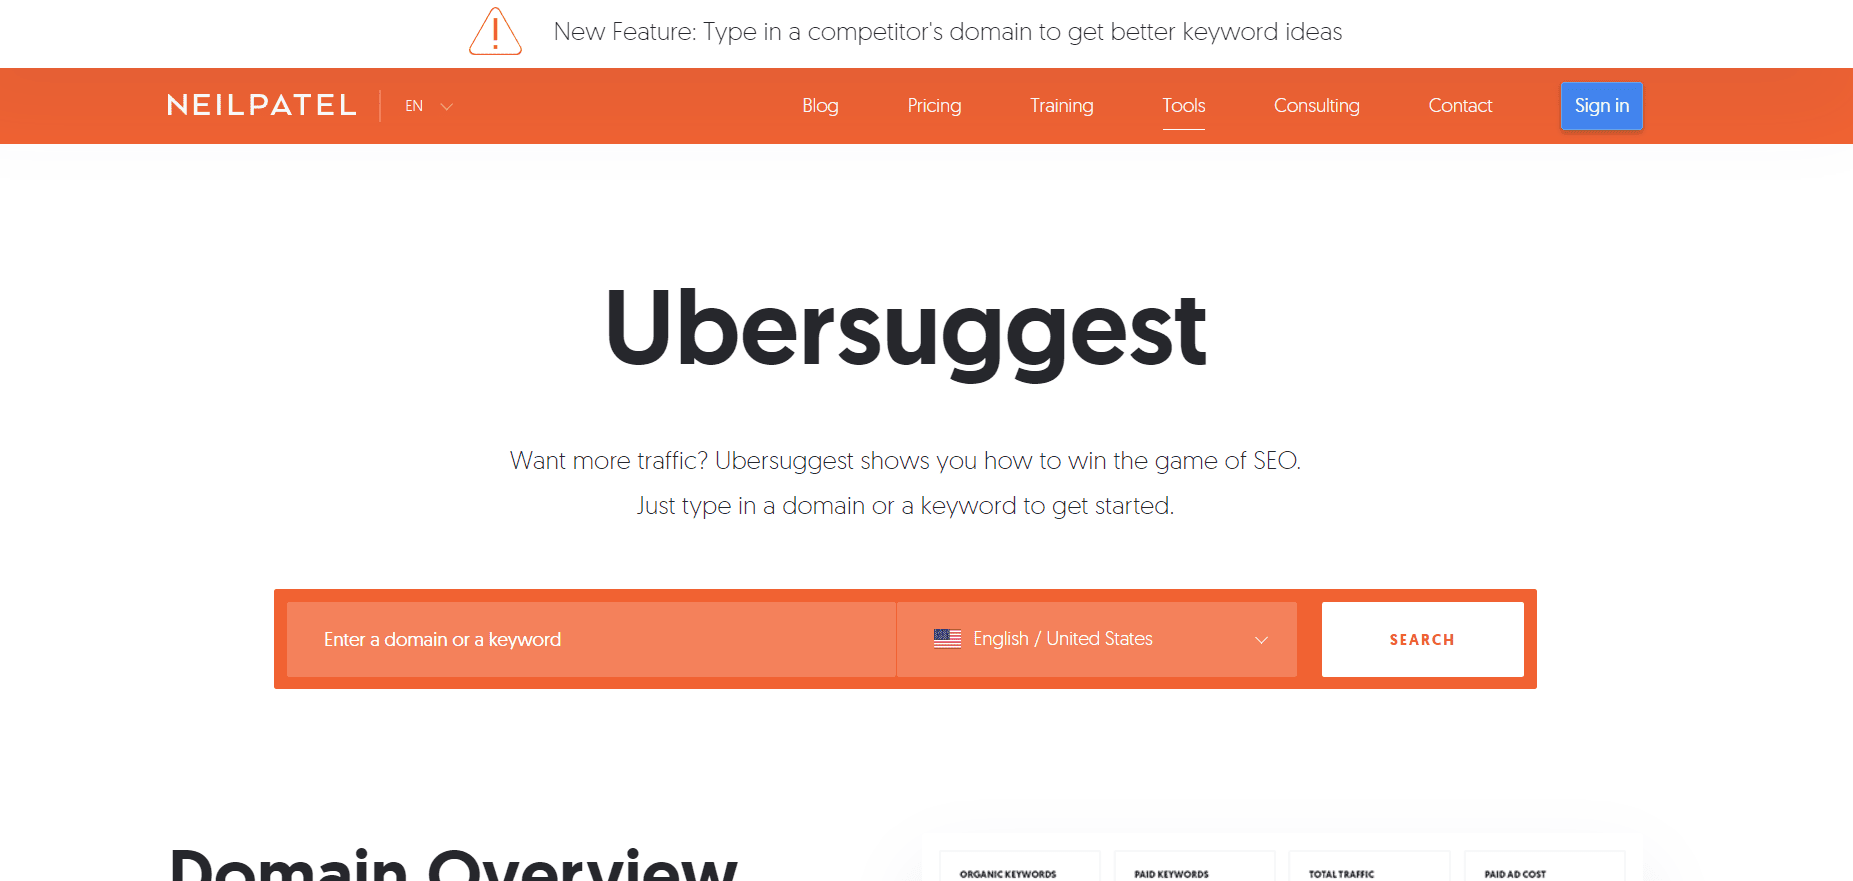 Trang tổng quan Ubersuggest